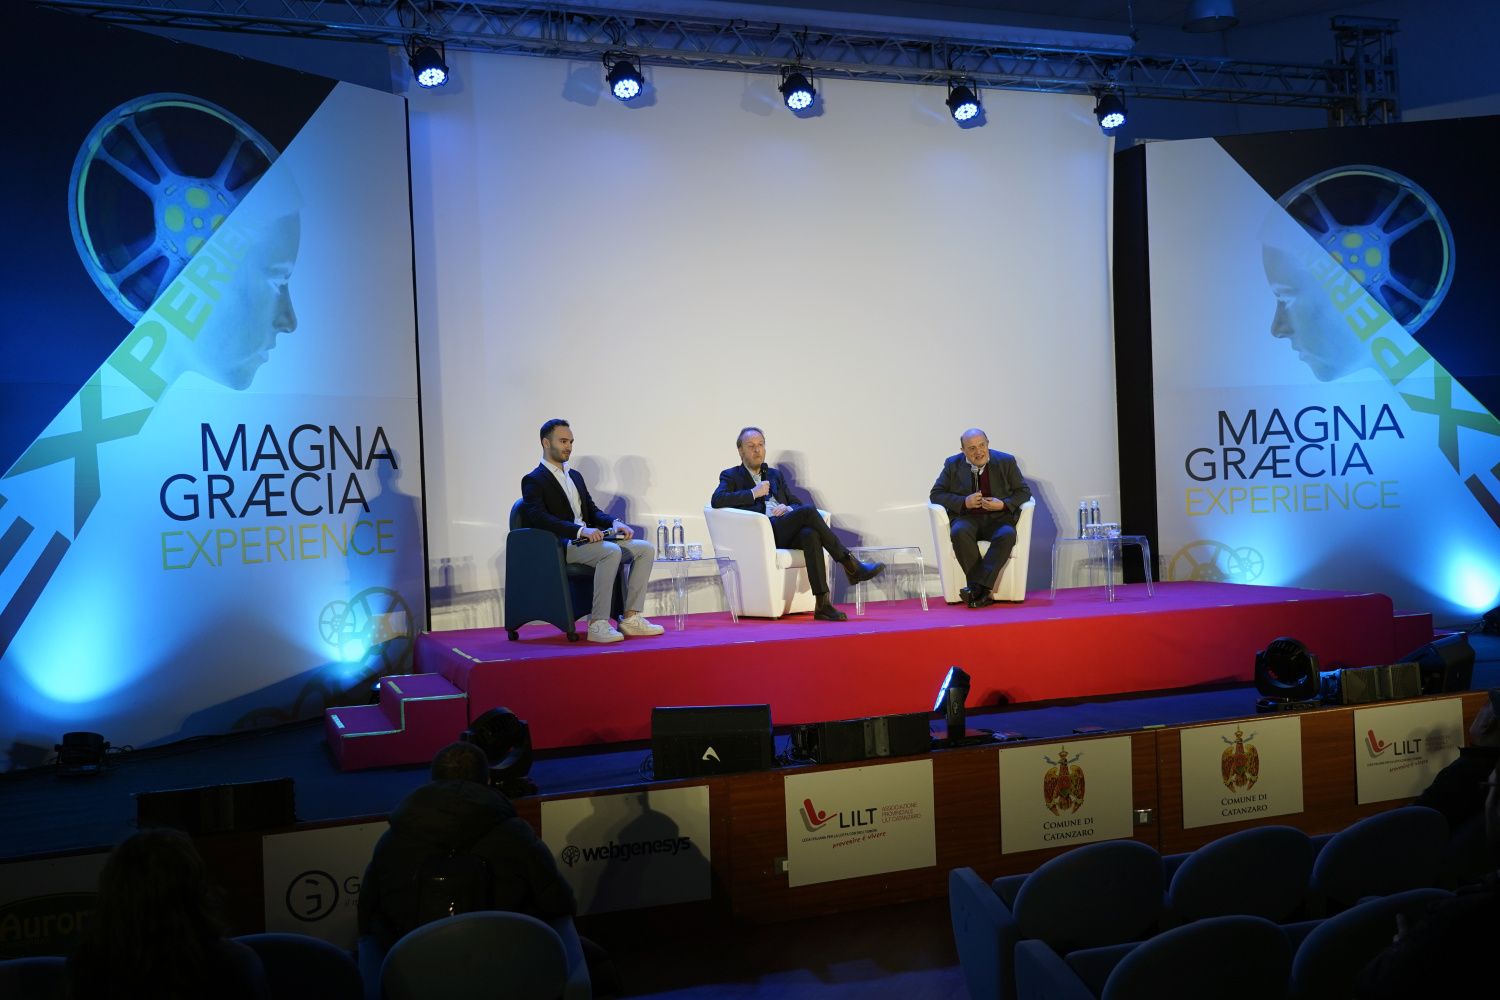 Magna Graecia Experience, con il regista Francesco Bruni a confronto sul mondo giovanile